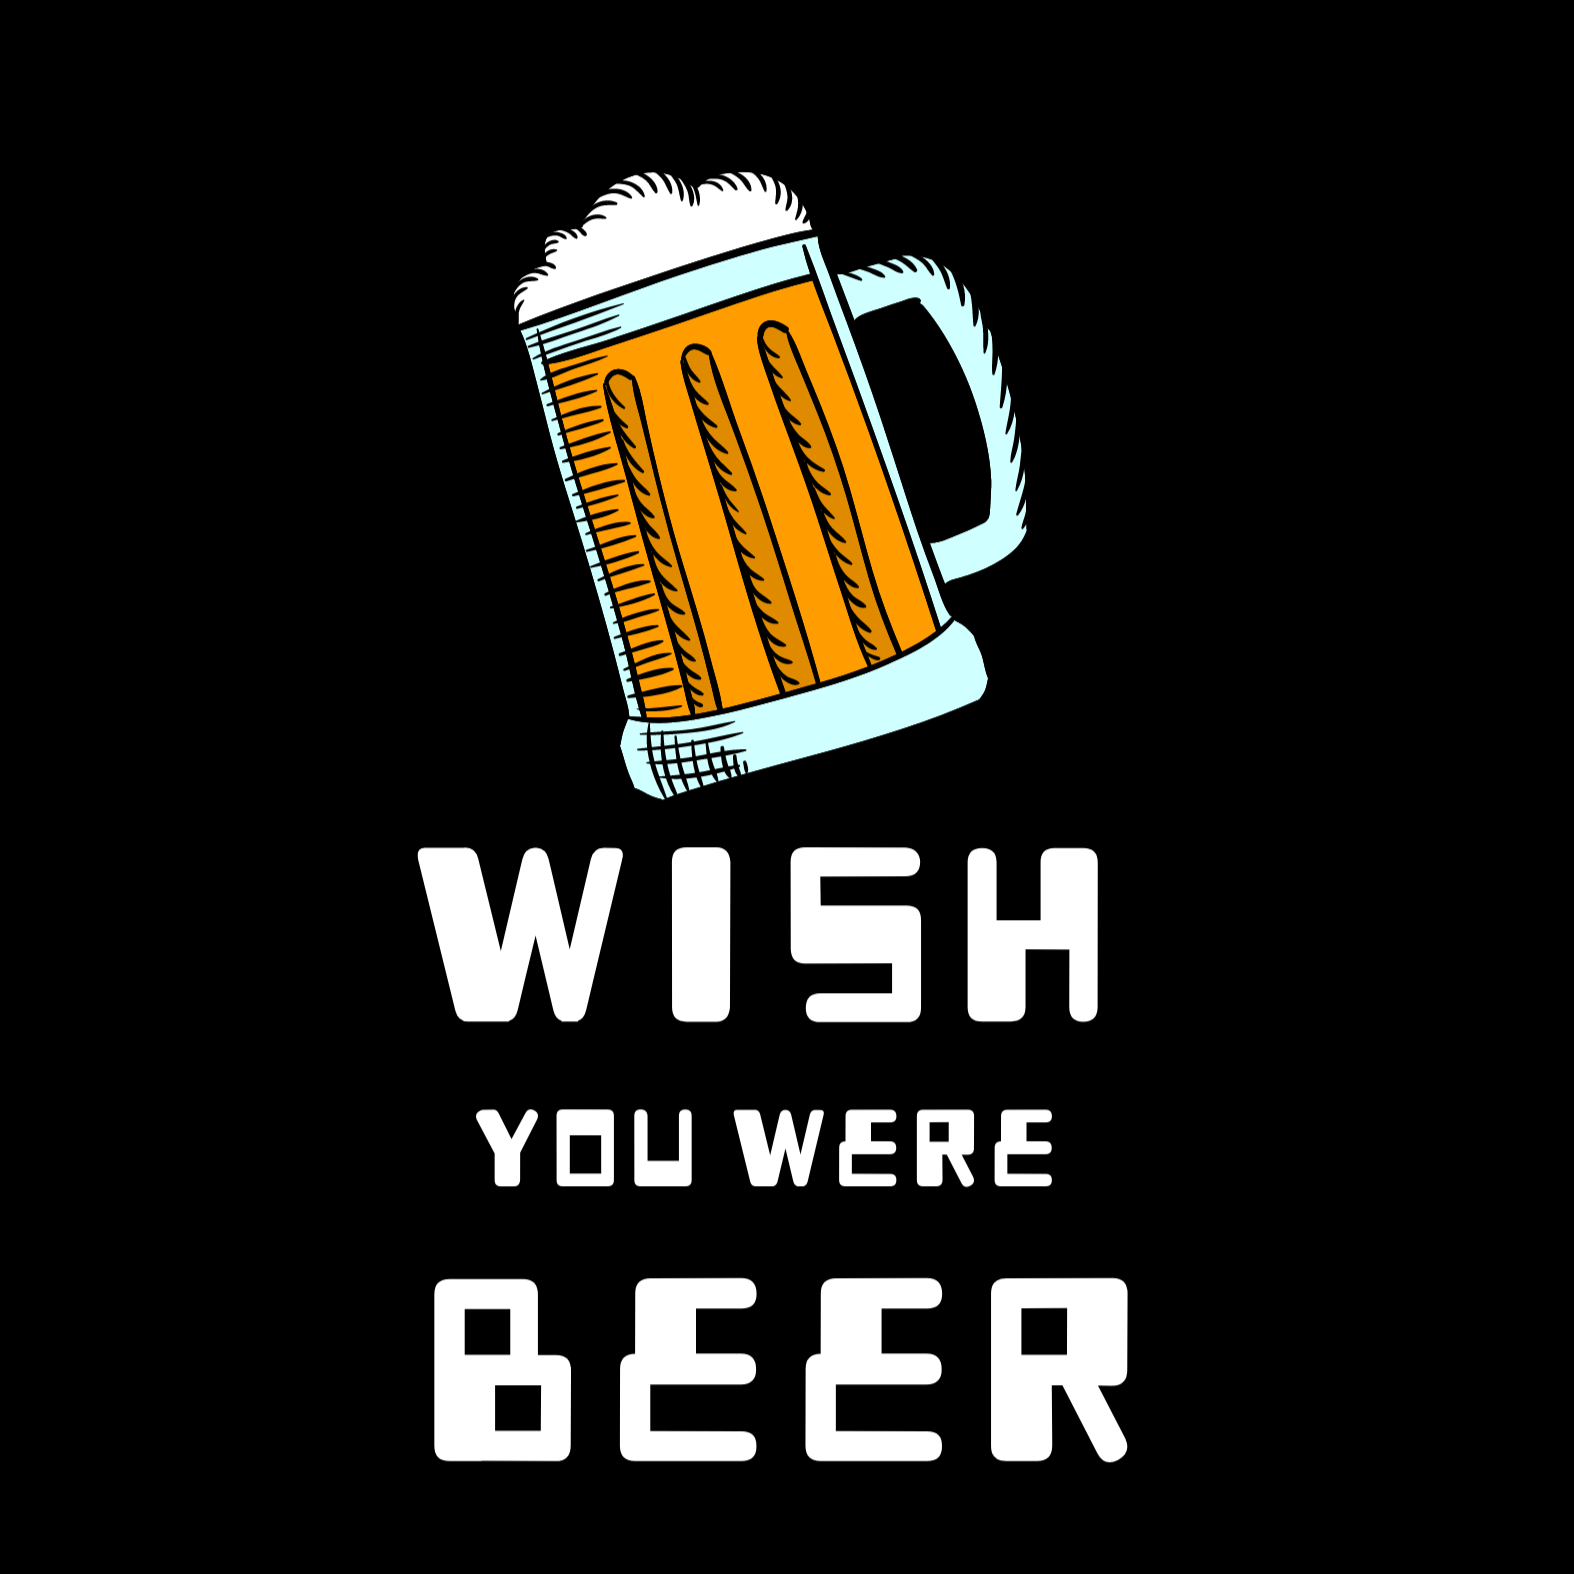 Wish You Were Beer - Ken Adams